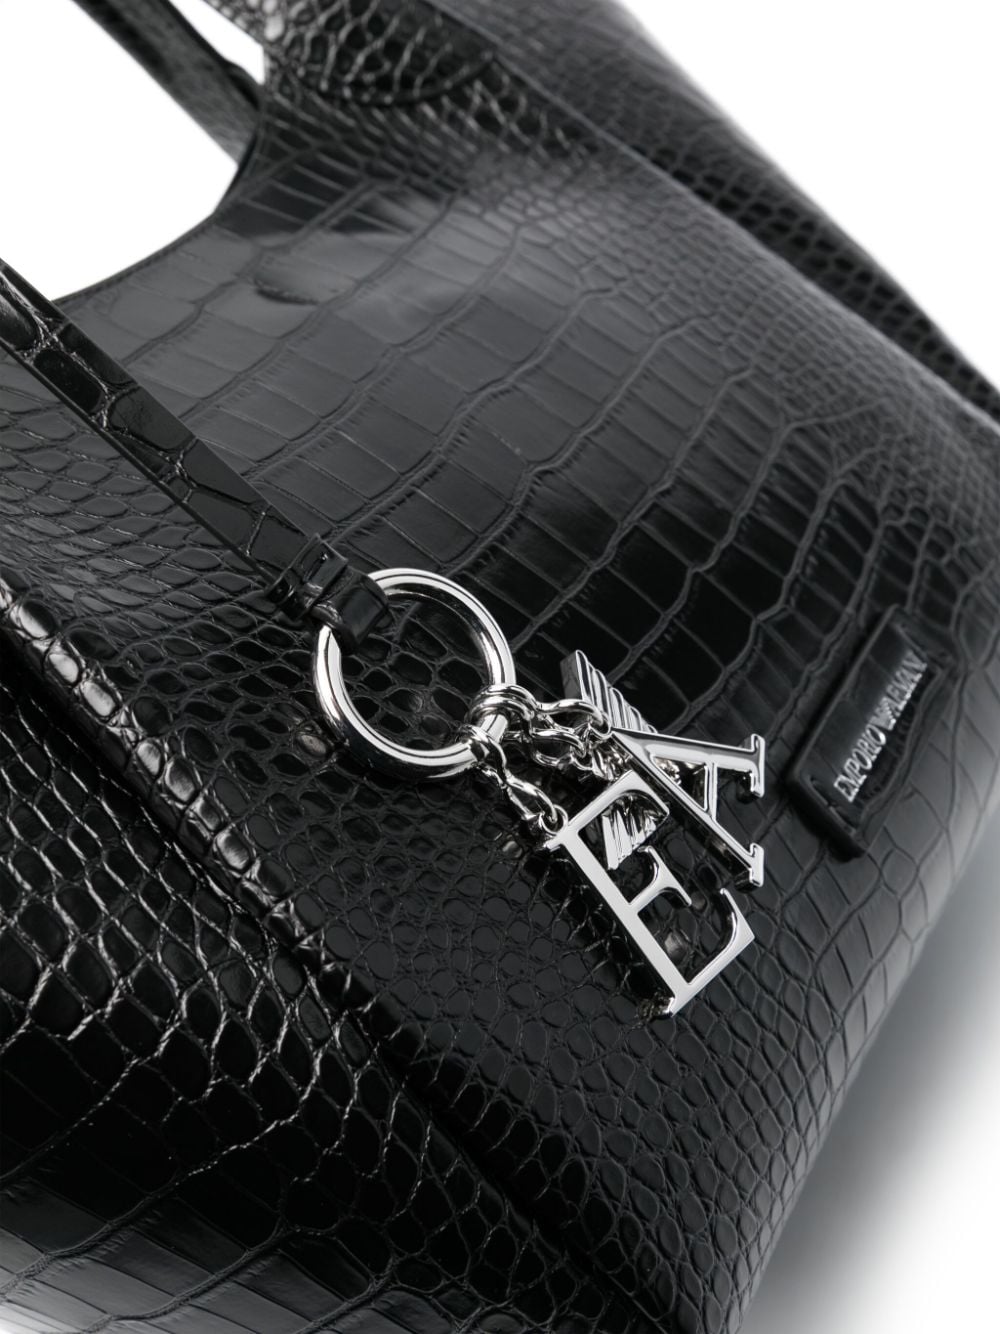 Emporio Armani E.Armani Exclusive Pre Bags.. Black